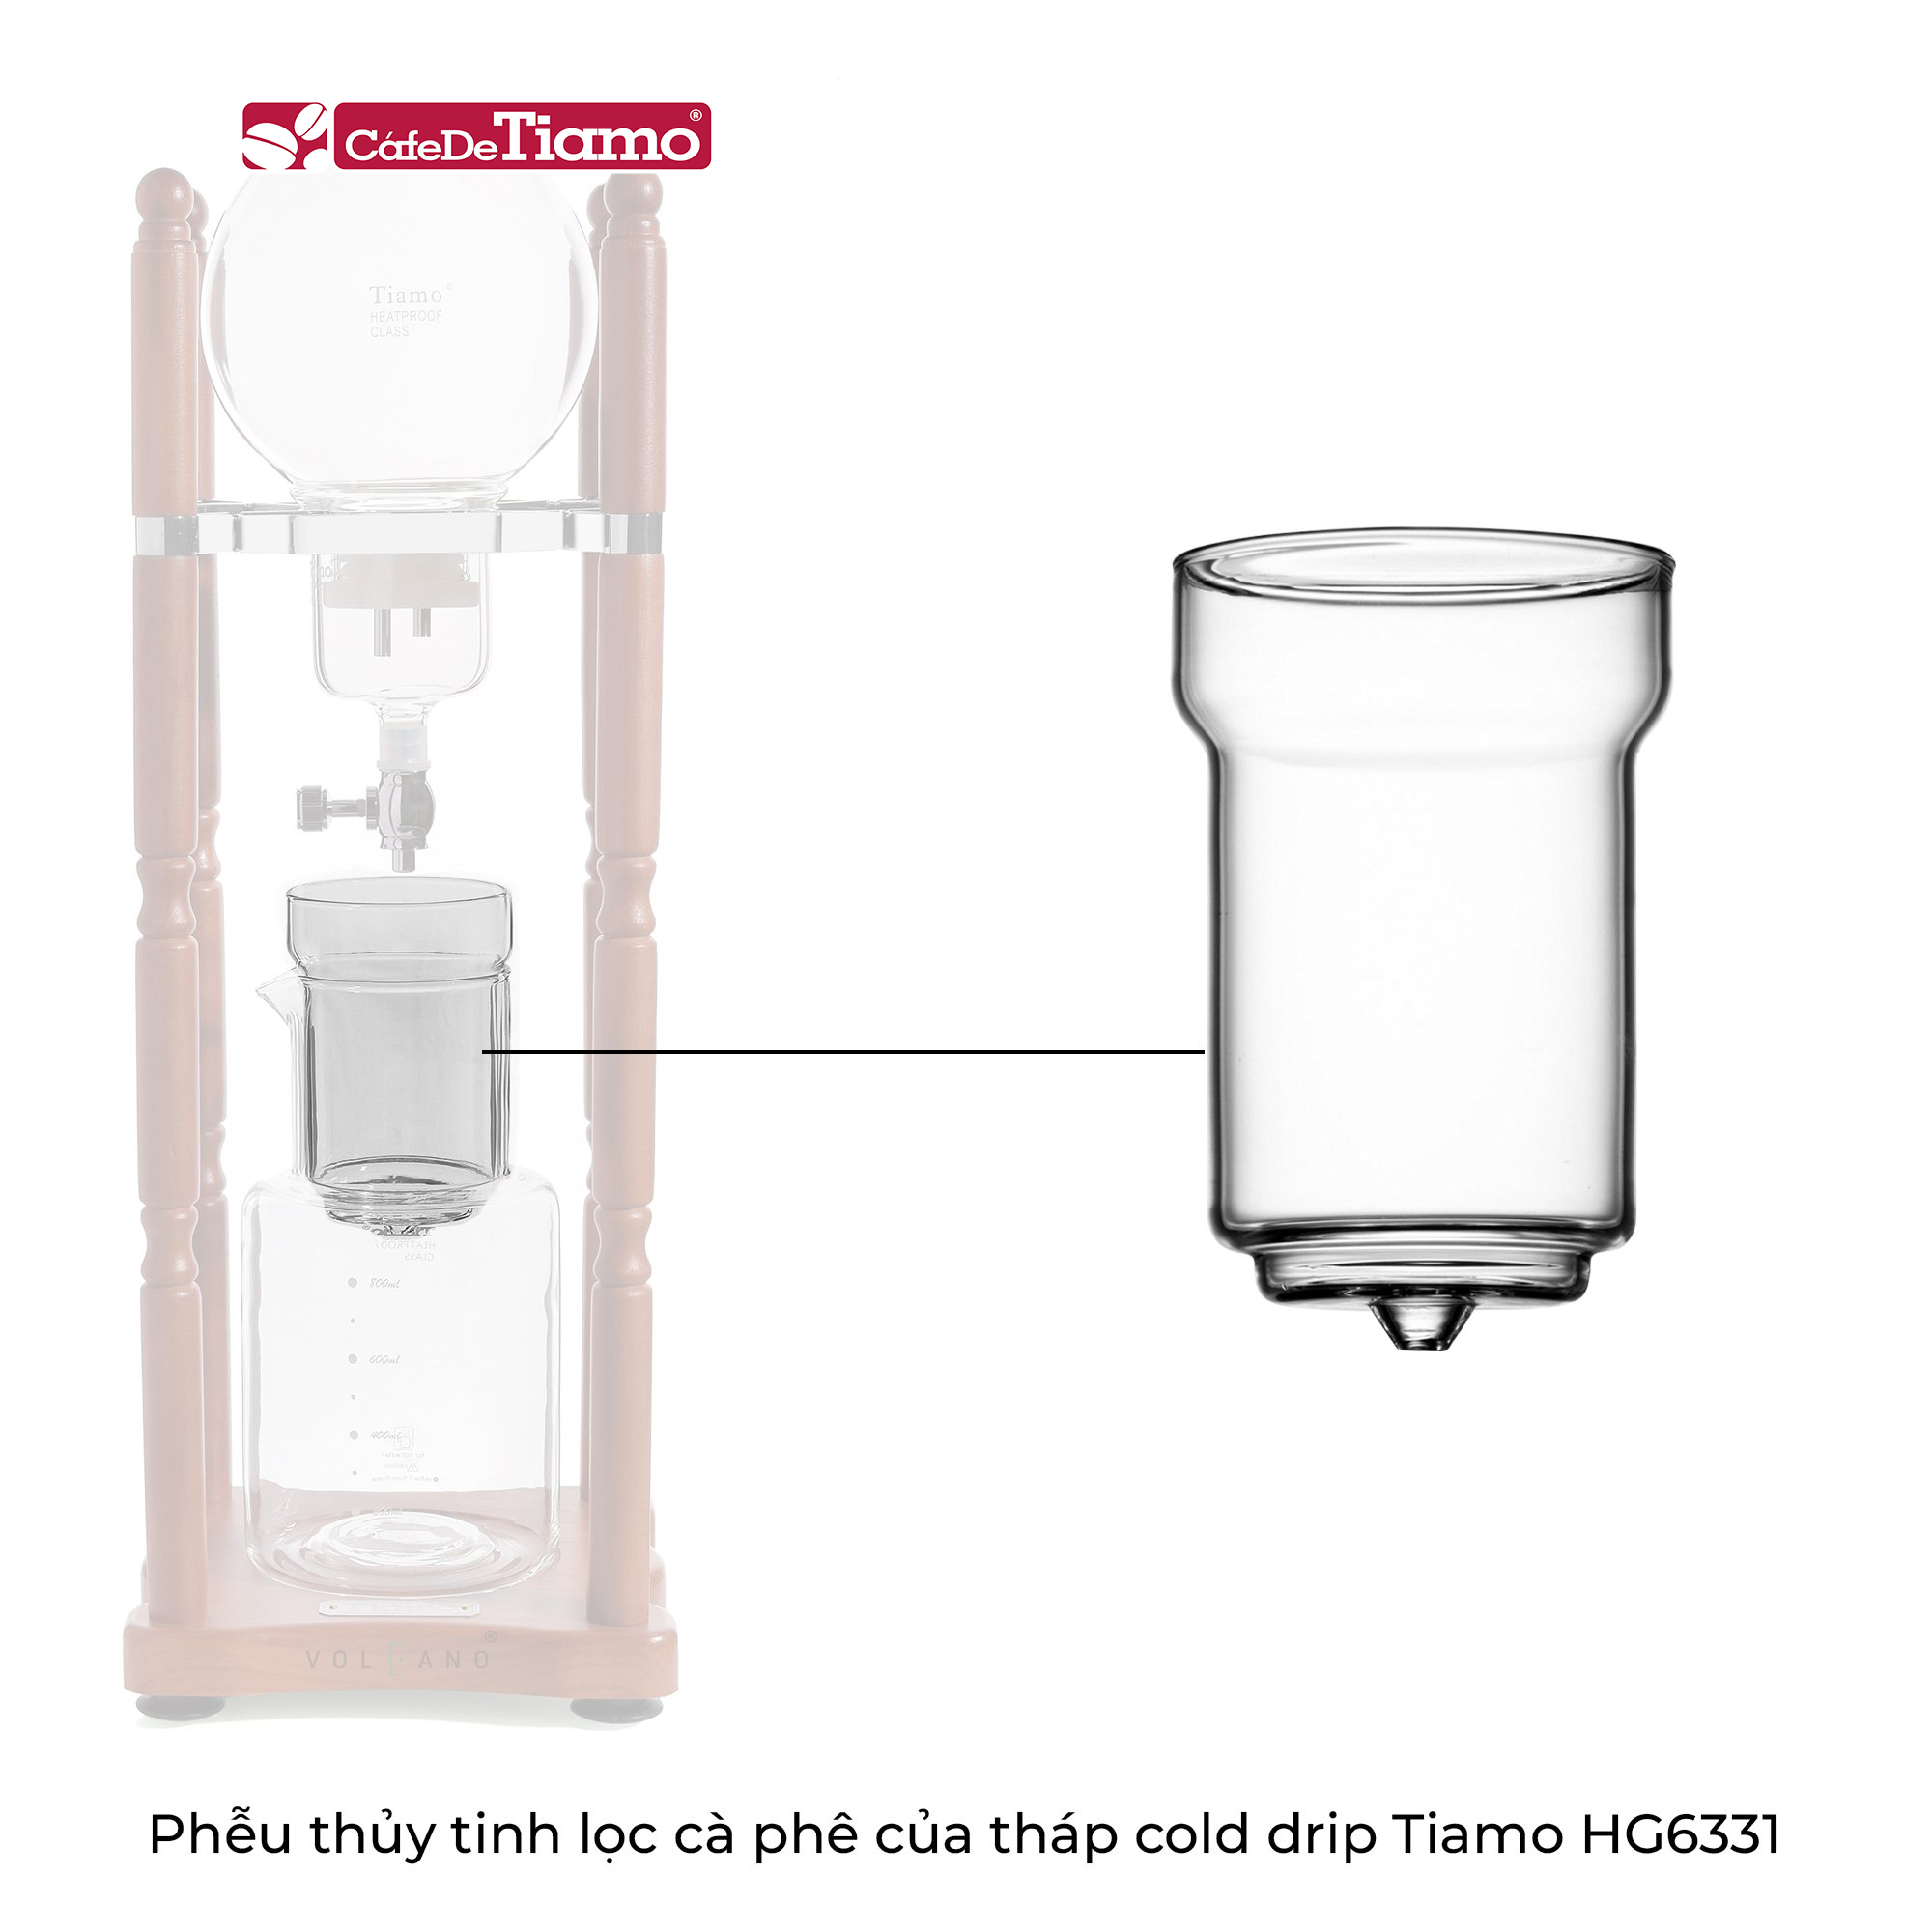 Phễu thủy tinh lọc cà phê của tháp Cold drip Tiamo HG6331